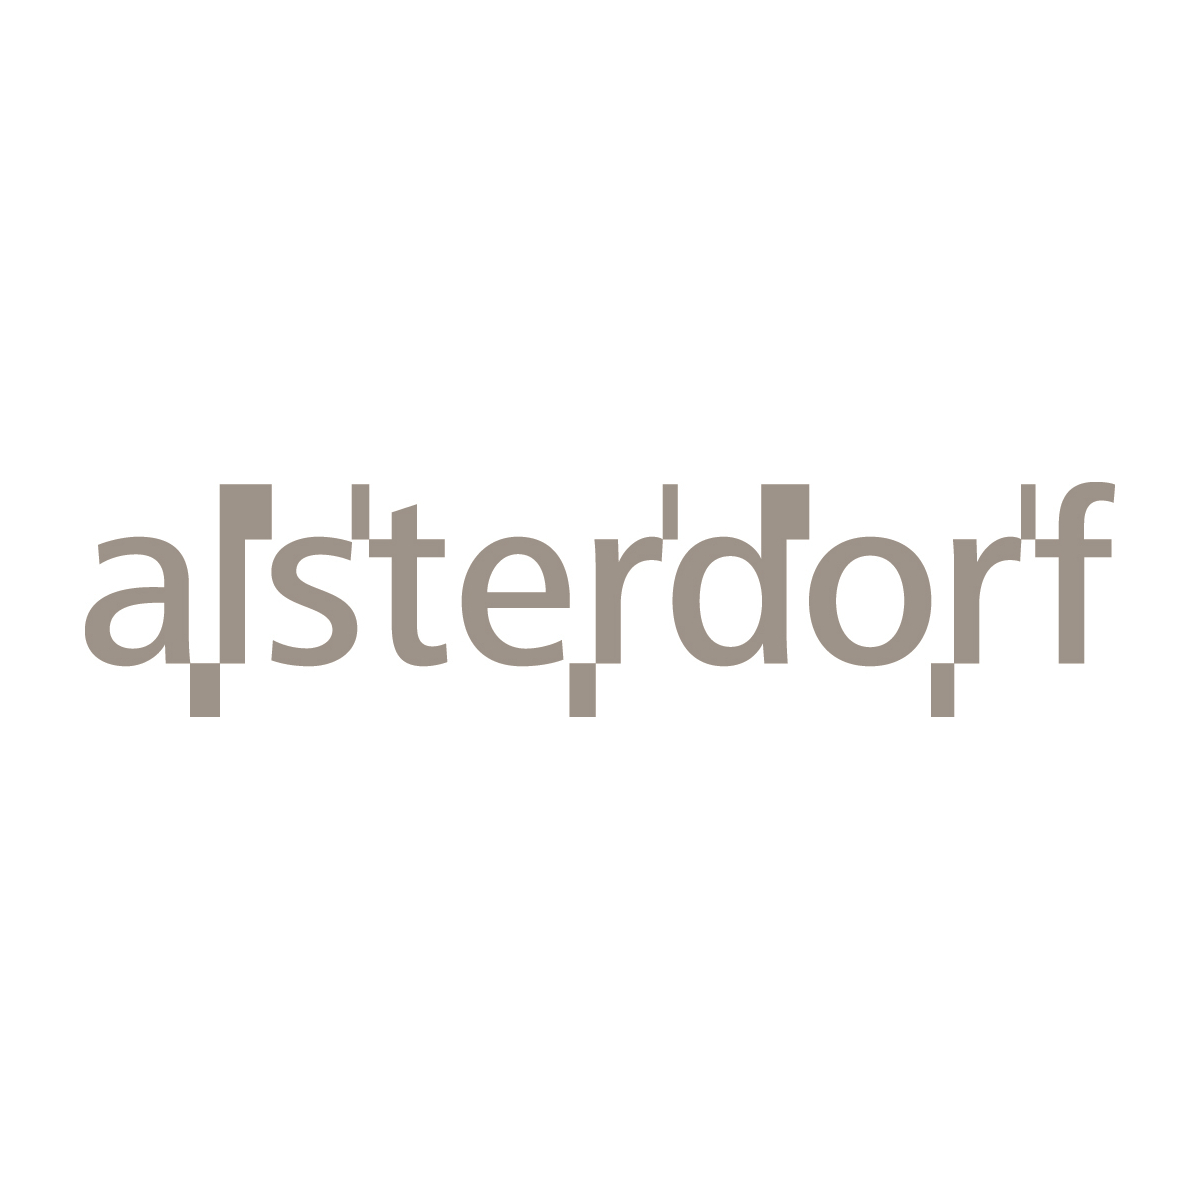 Logo Evangelische Stiftung Alsterdorf Bereich Kommunikation